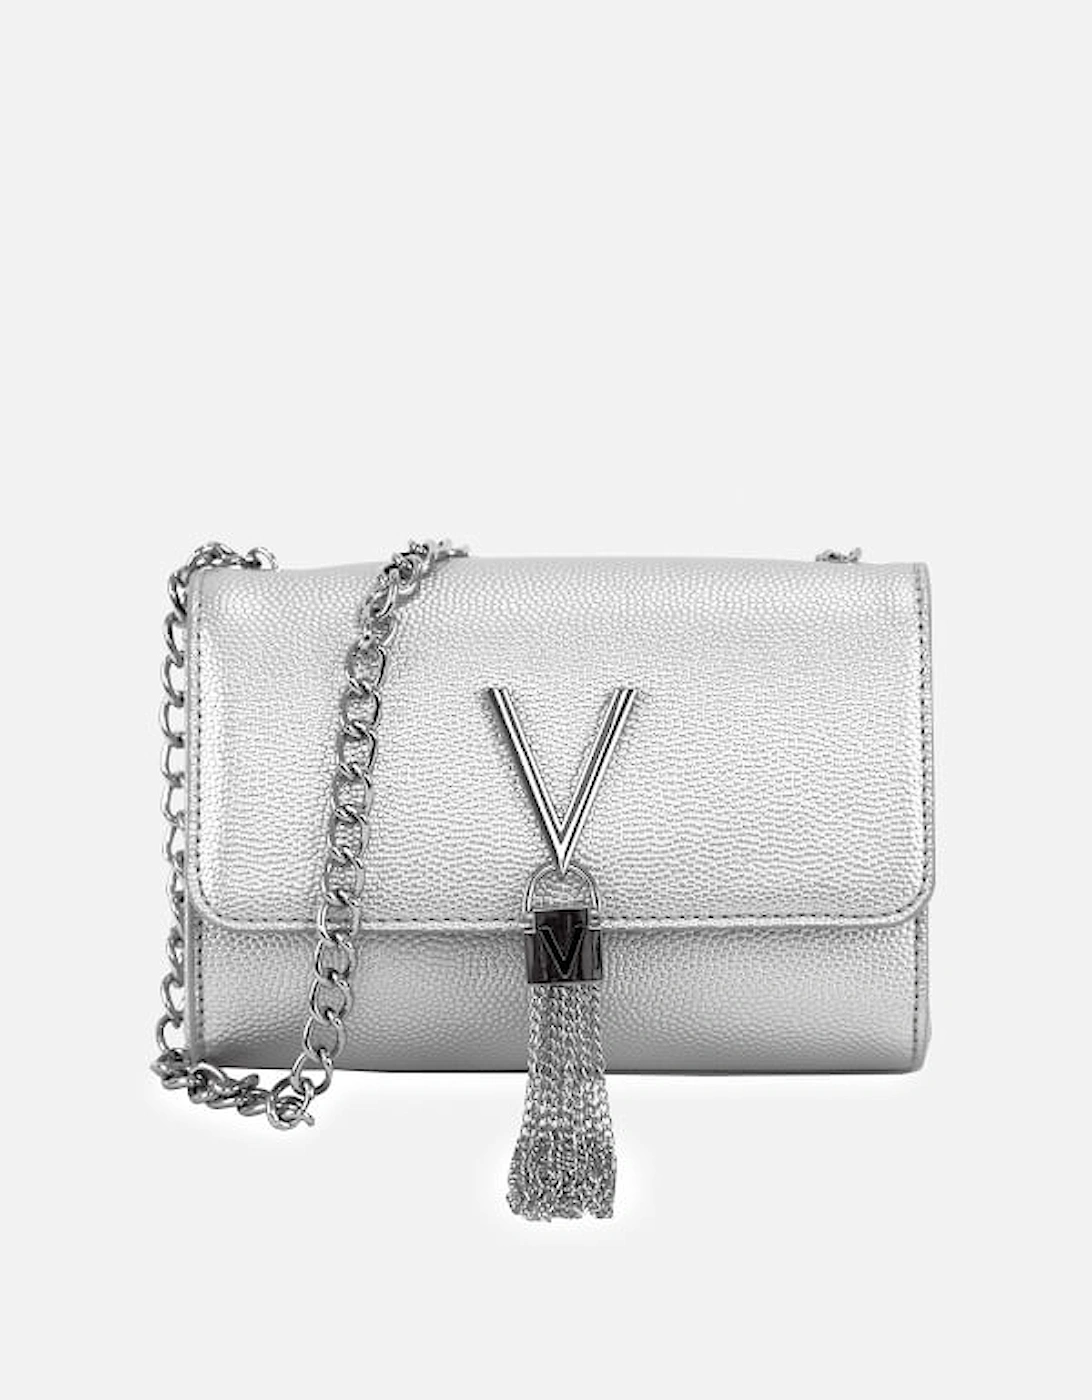 Home - Designer Handbags for Women - Designer Shoulder Bags - Women's Divina Small Shoulder Bag - Silver - - Women's Divina Small Shoulder Bag - Silver, 2 of 1